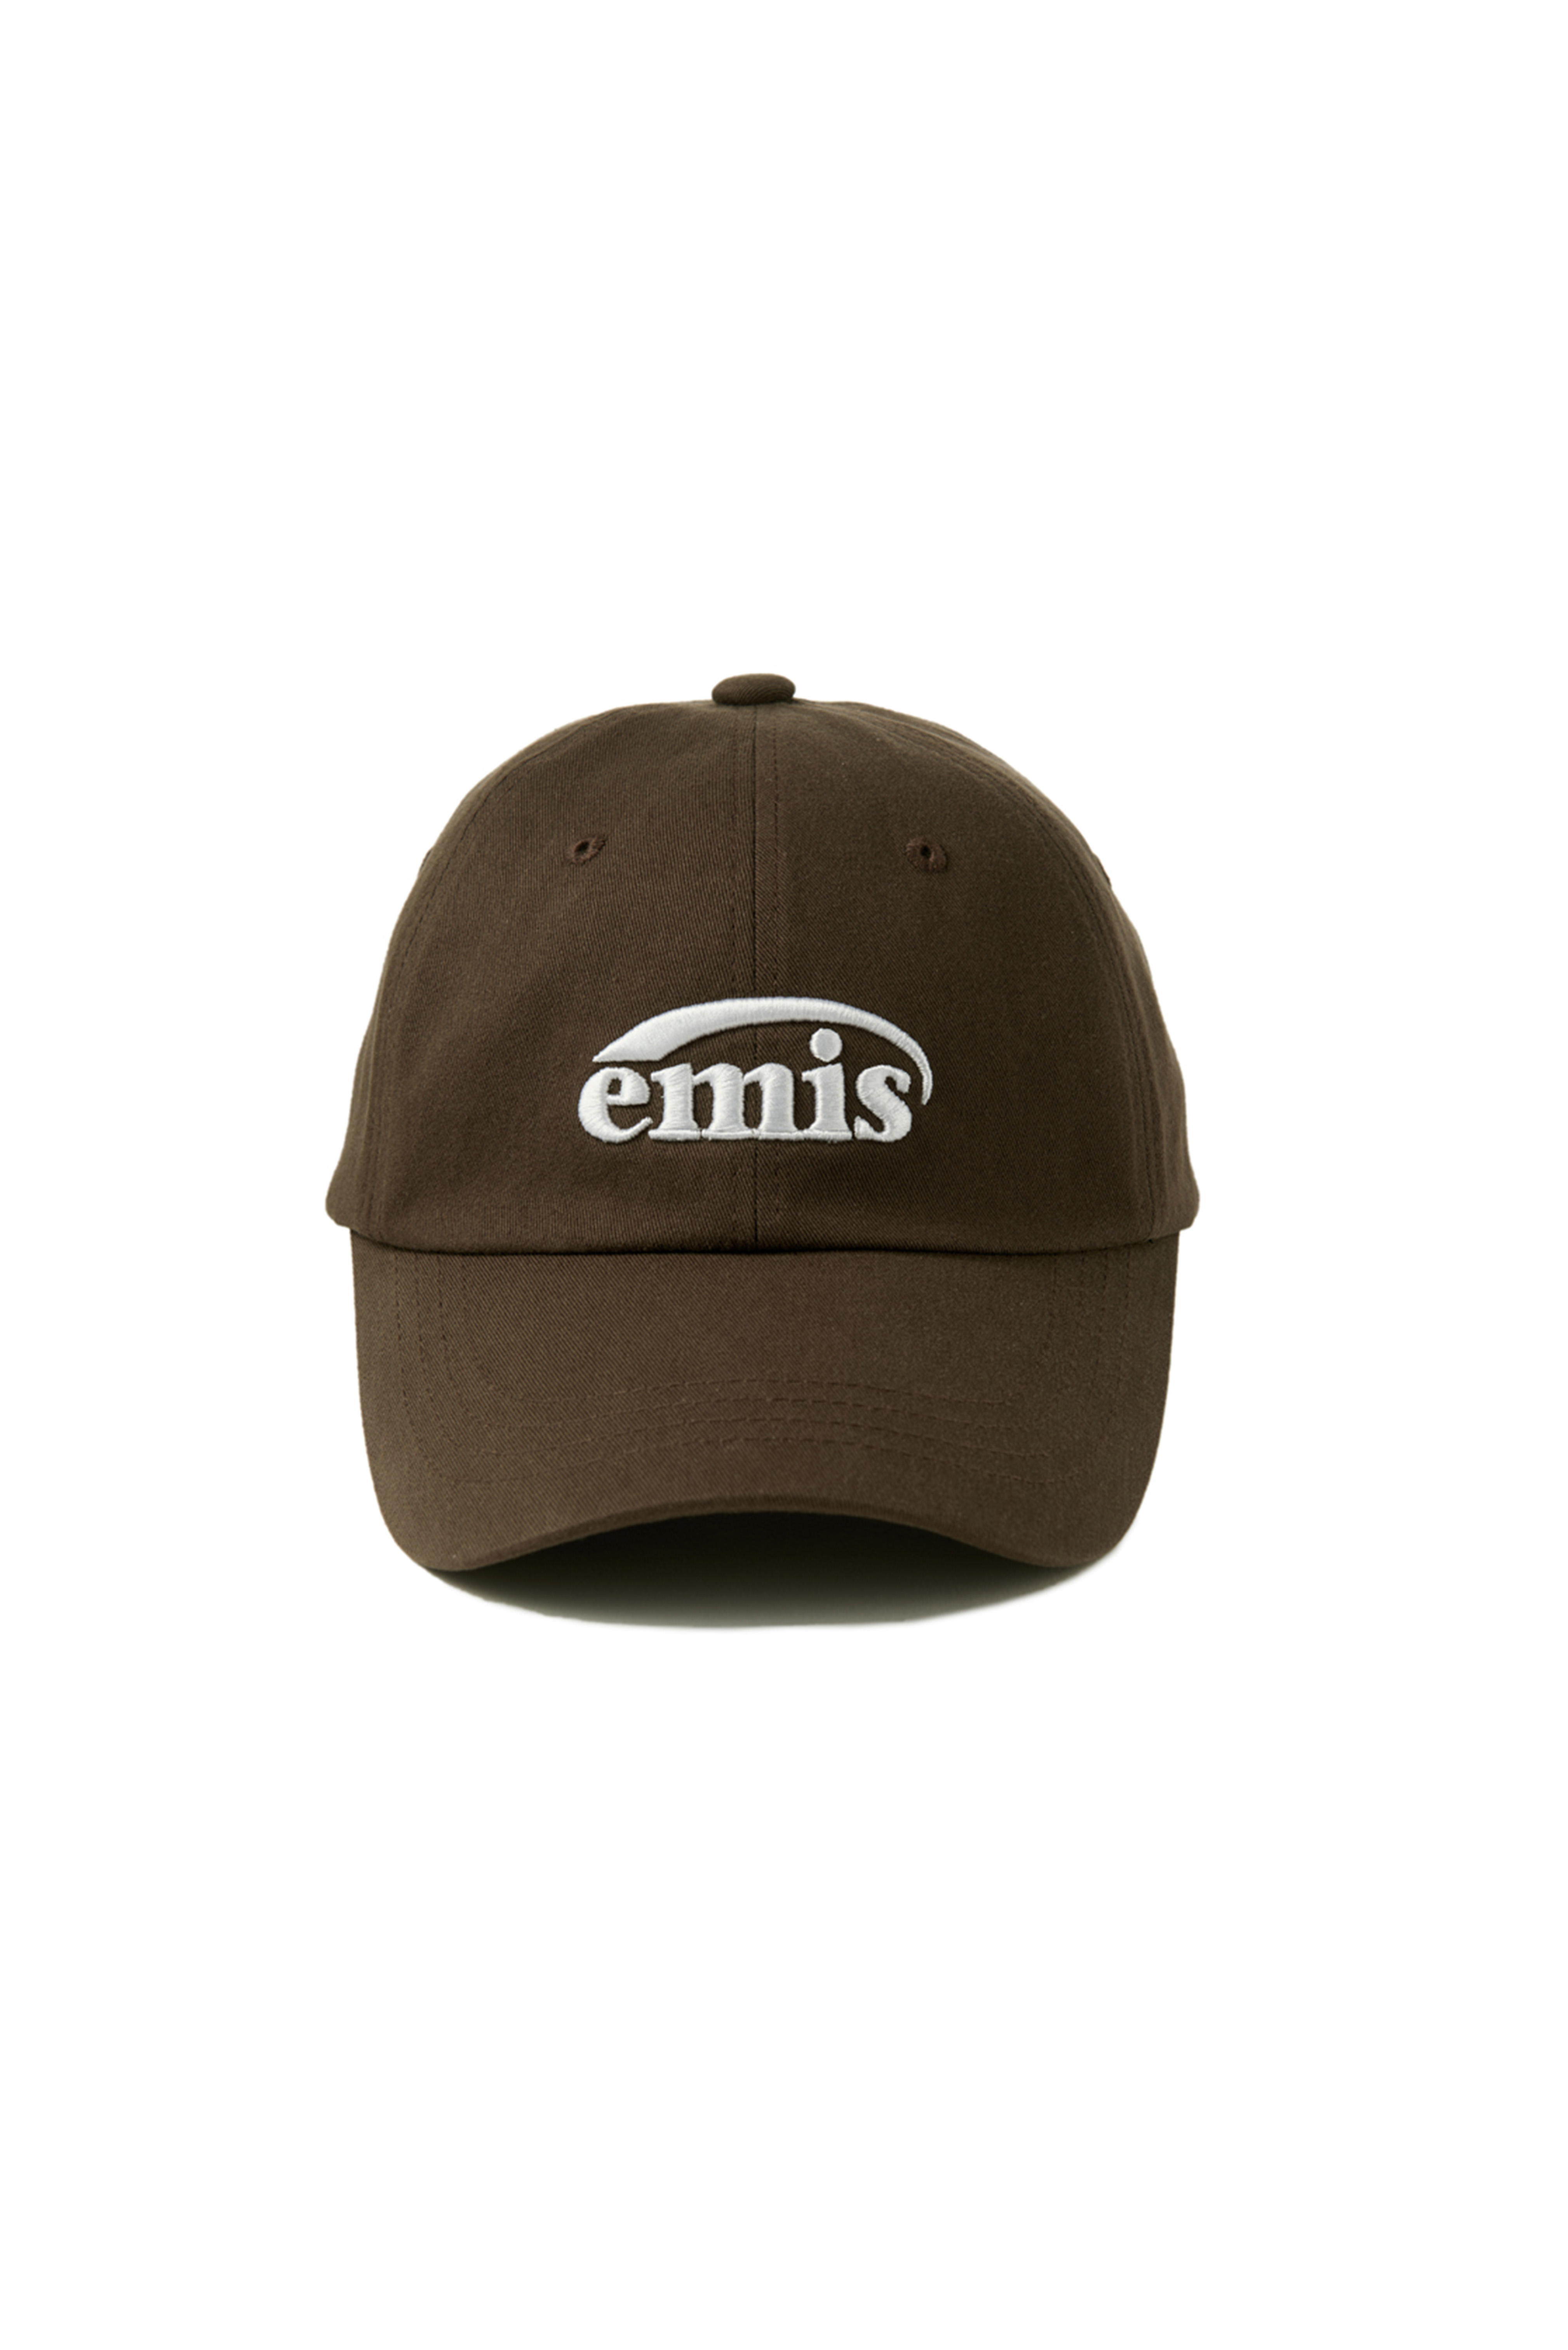 NEW LOGO EMIS CAP-BROWN